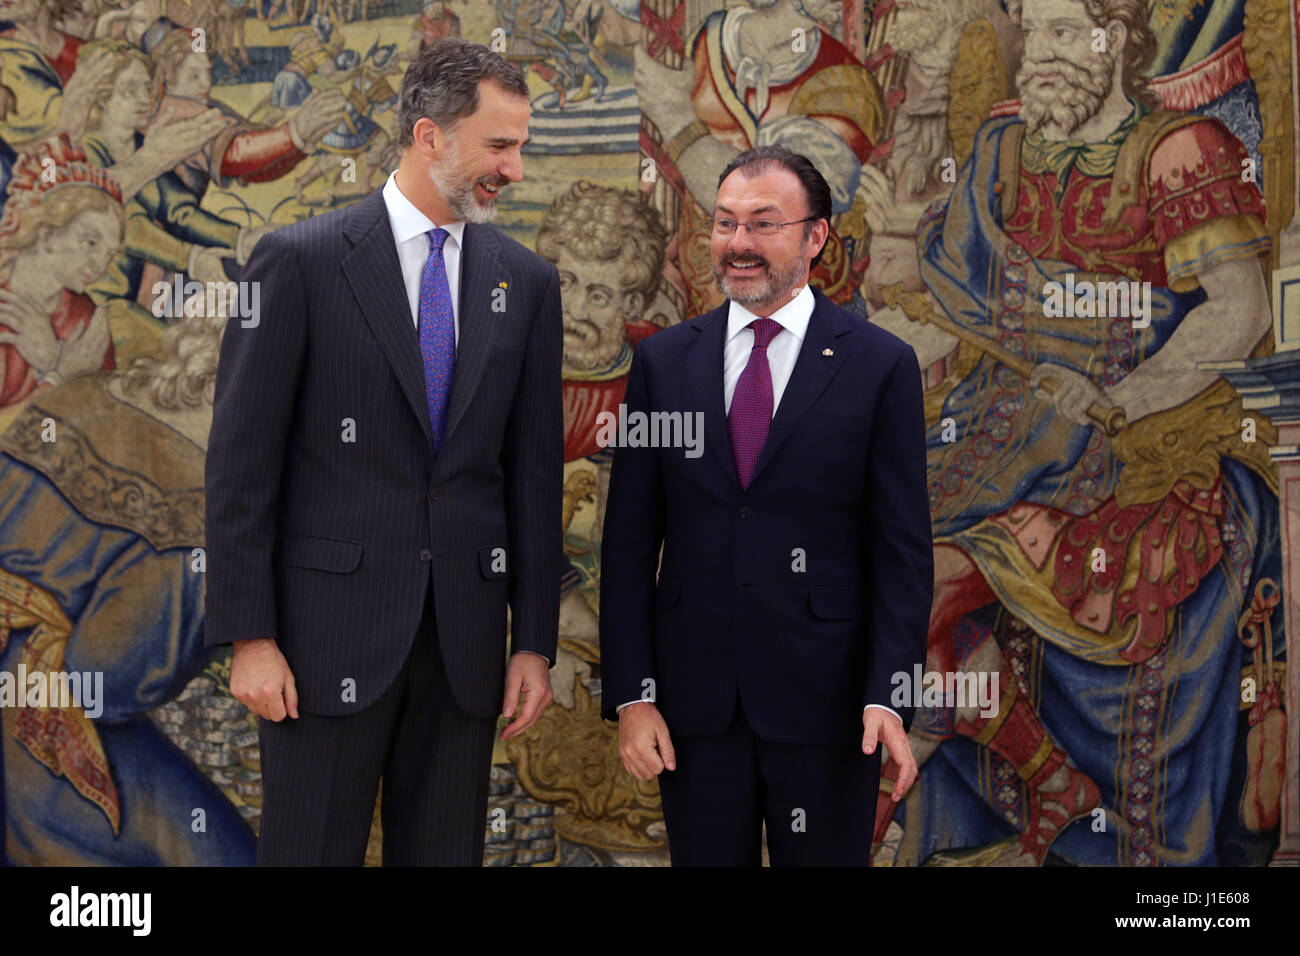 El rey de España Felipe VI y el Secretario de Relaciones Exteriores de México, Luis Videgaray Caso, durante una audiencia celebrada en el Palacio de la Zarzuela de Madrid el jueves, 20 de abril de 2017. Foto de stock